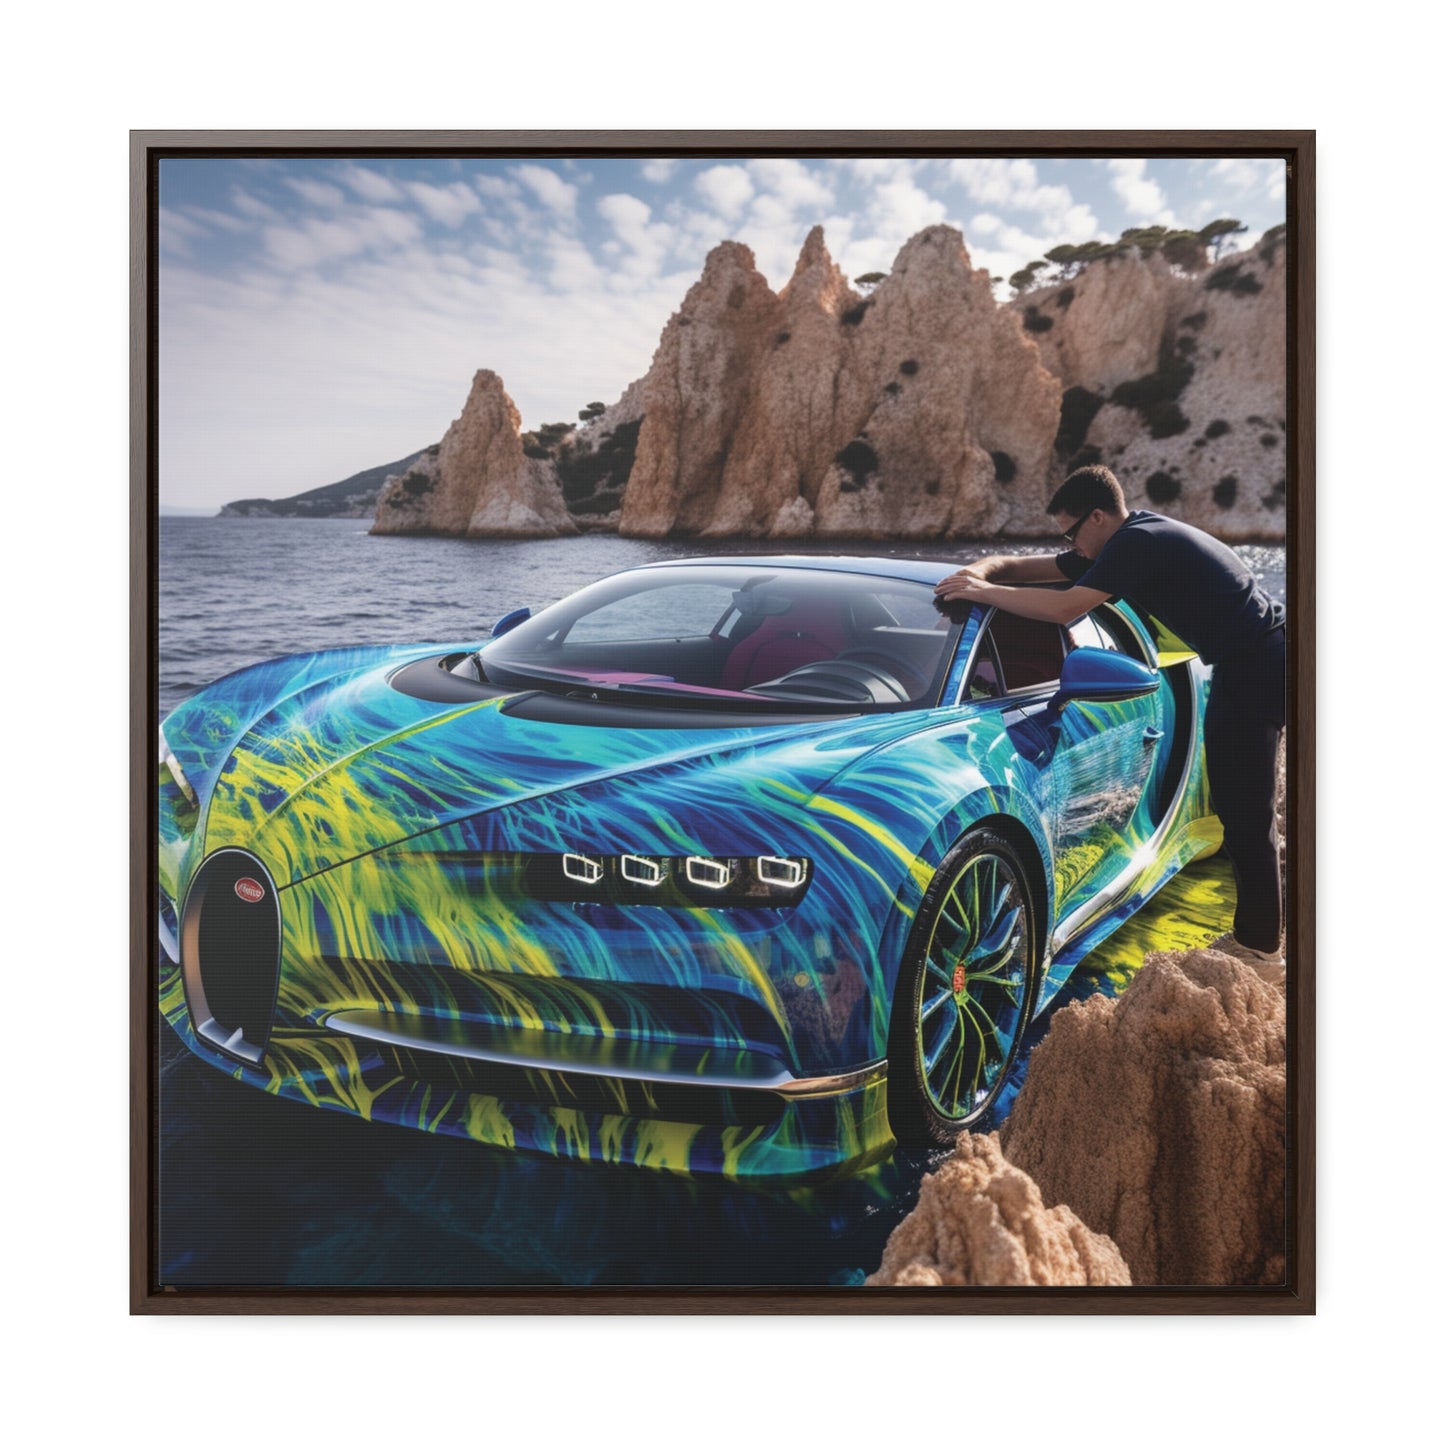 Gallery Canvas Wraps, Square Frame Bugatti Water 1